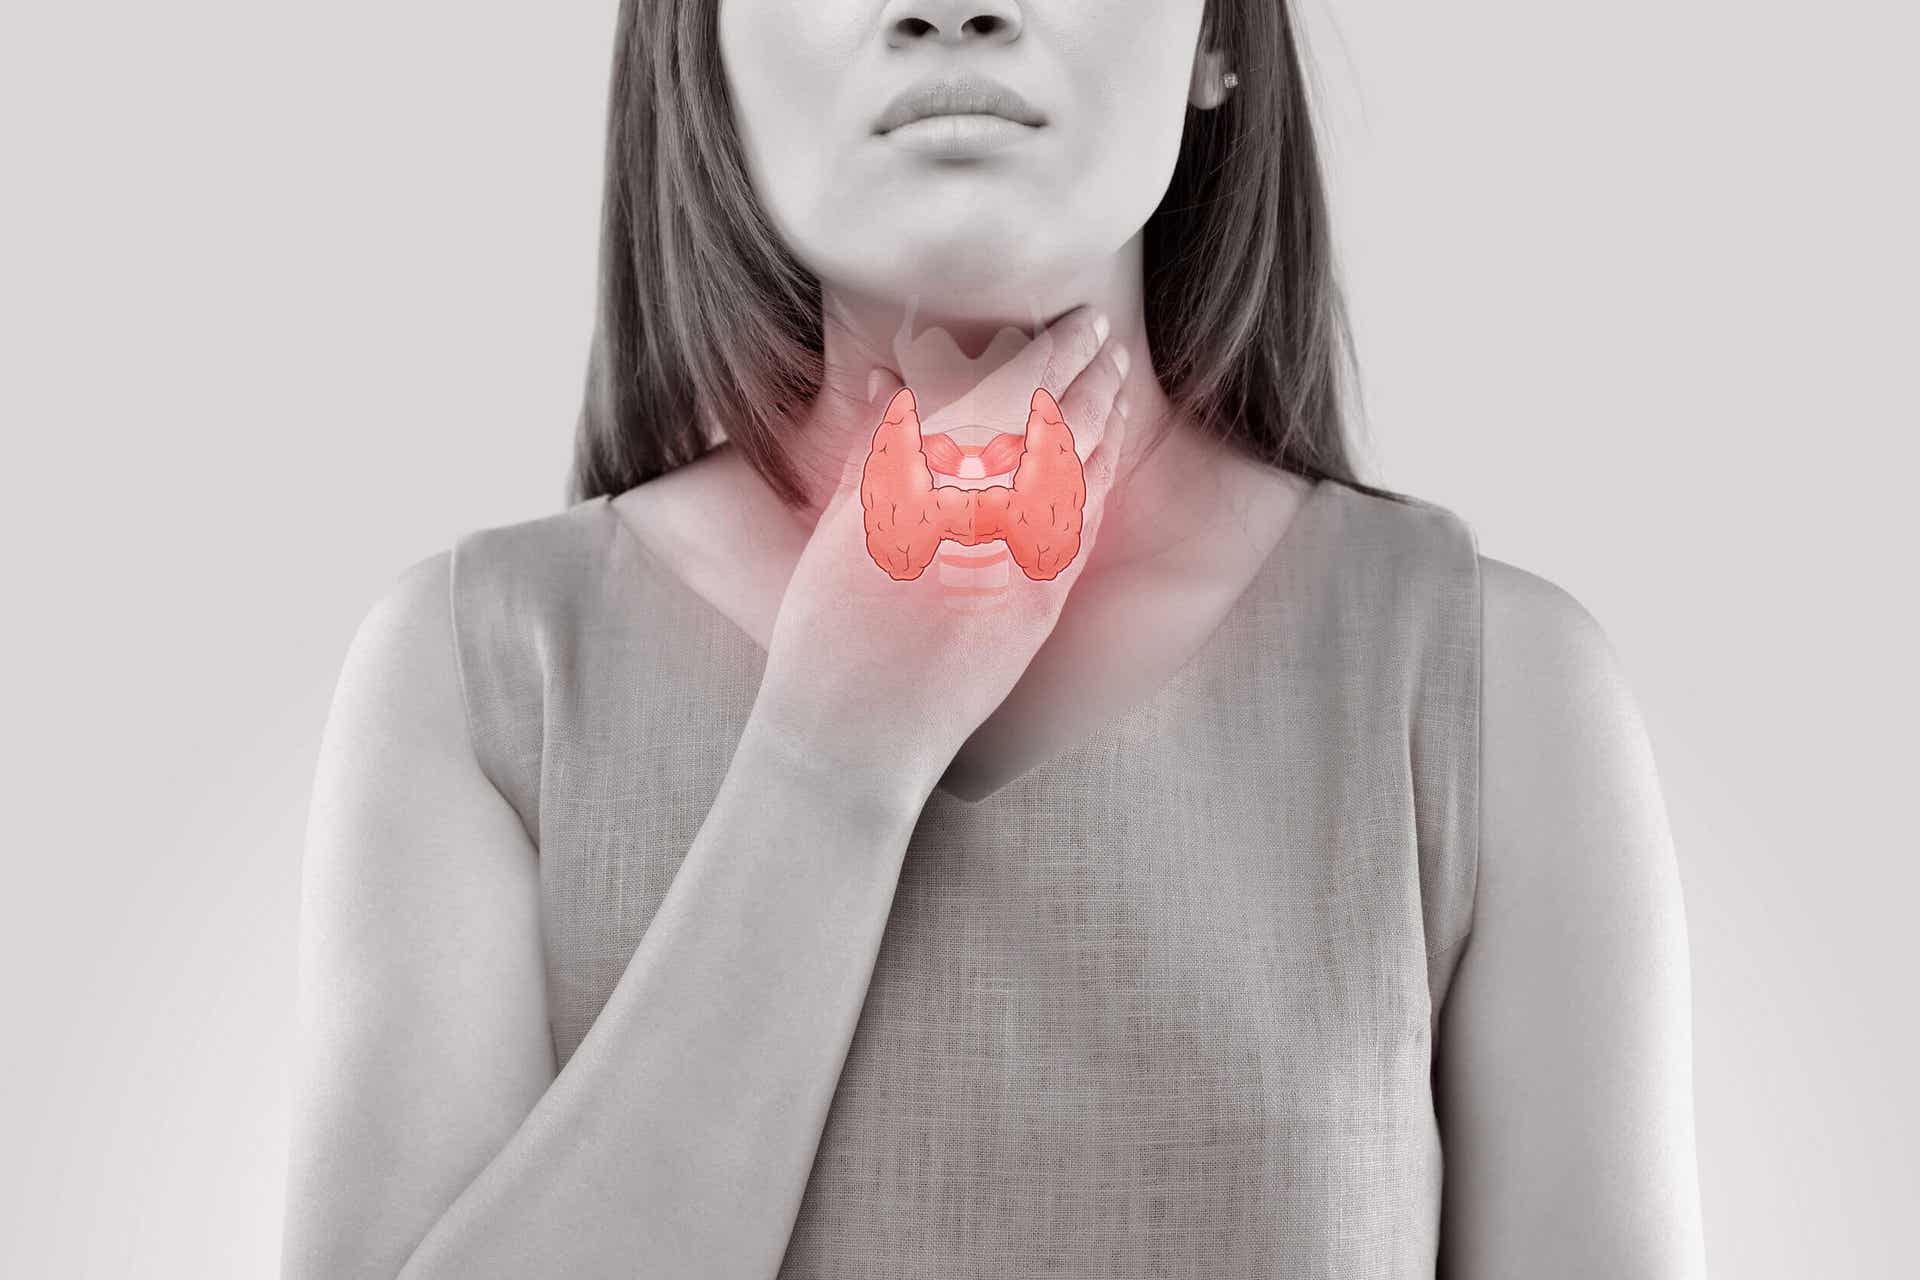 Malattia della tiroide e umore sono correlati attraverso l'azione sul metabolismo